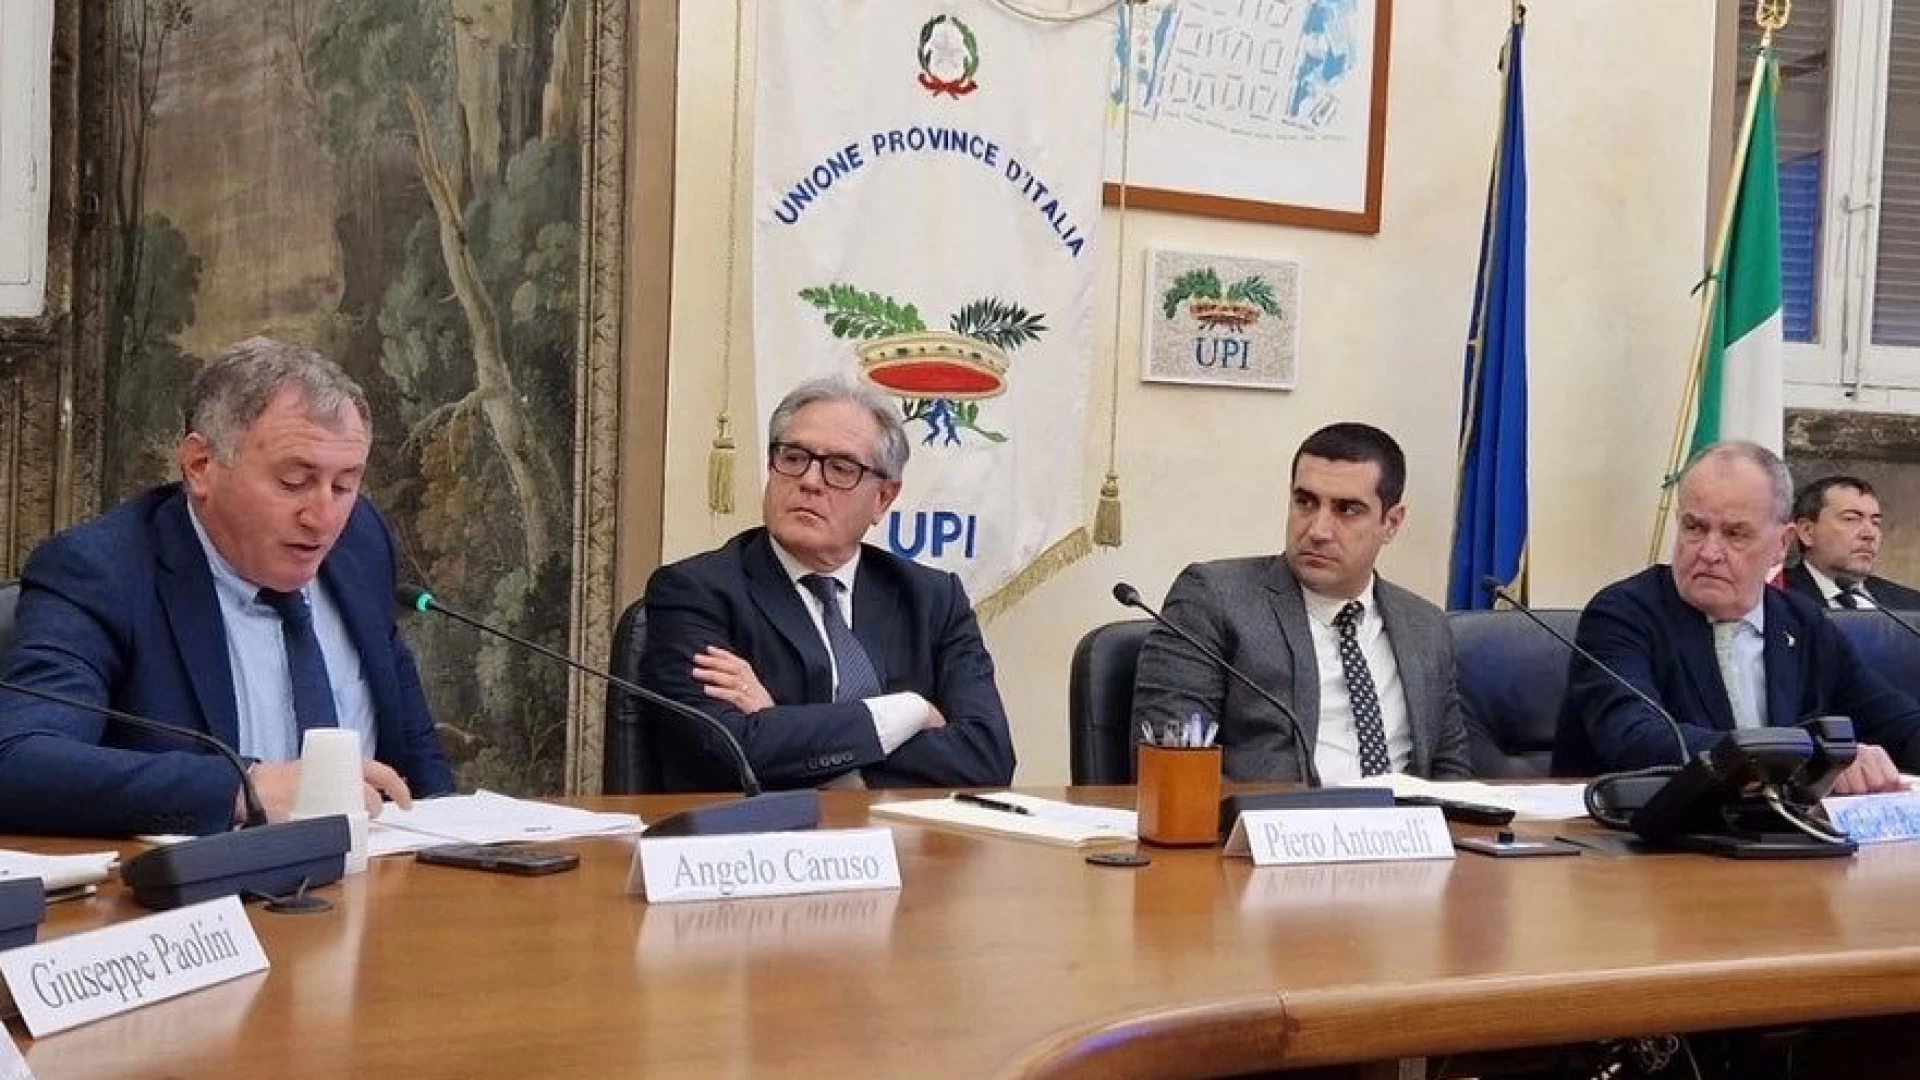 Incontro a Roma tra i presidenti della Provincie Italiane e il Ministro Calderoli. Caruso: “Soddisfatti dell’incontro odierno. Le Province vanno rafforzate”.